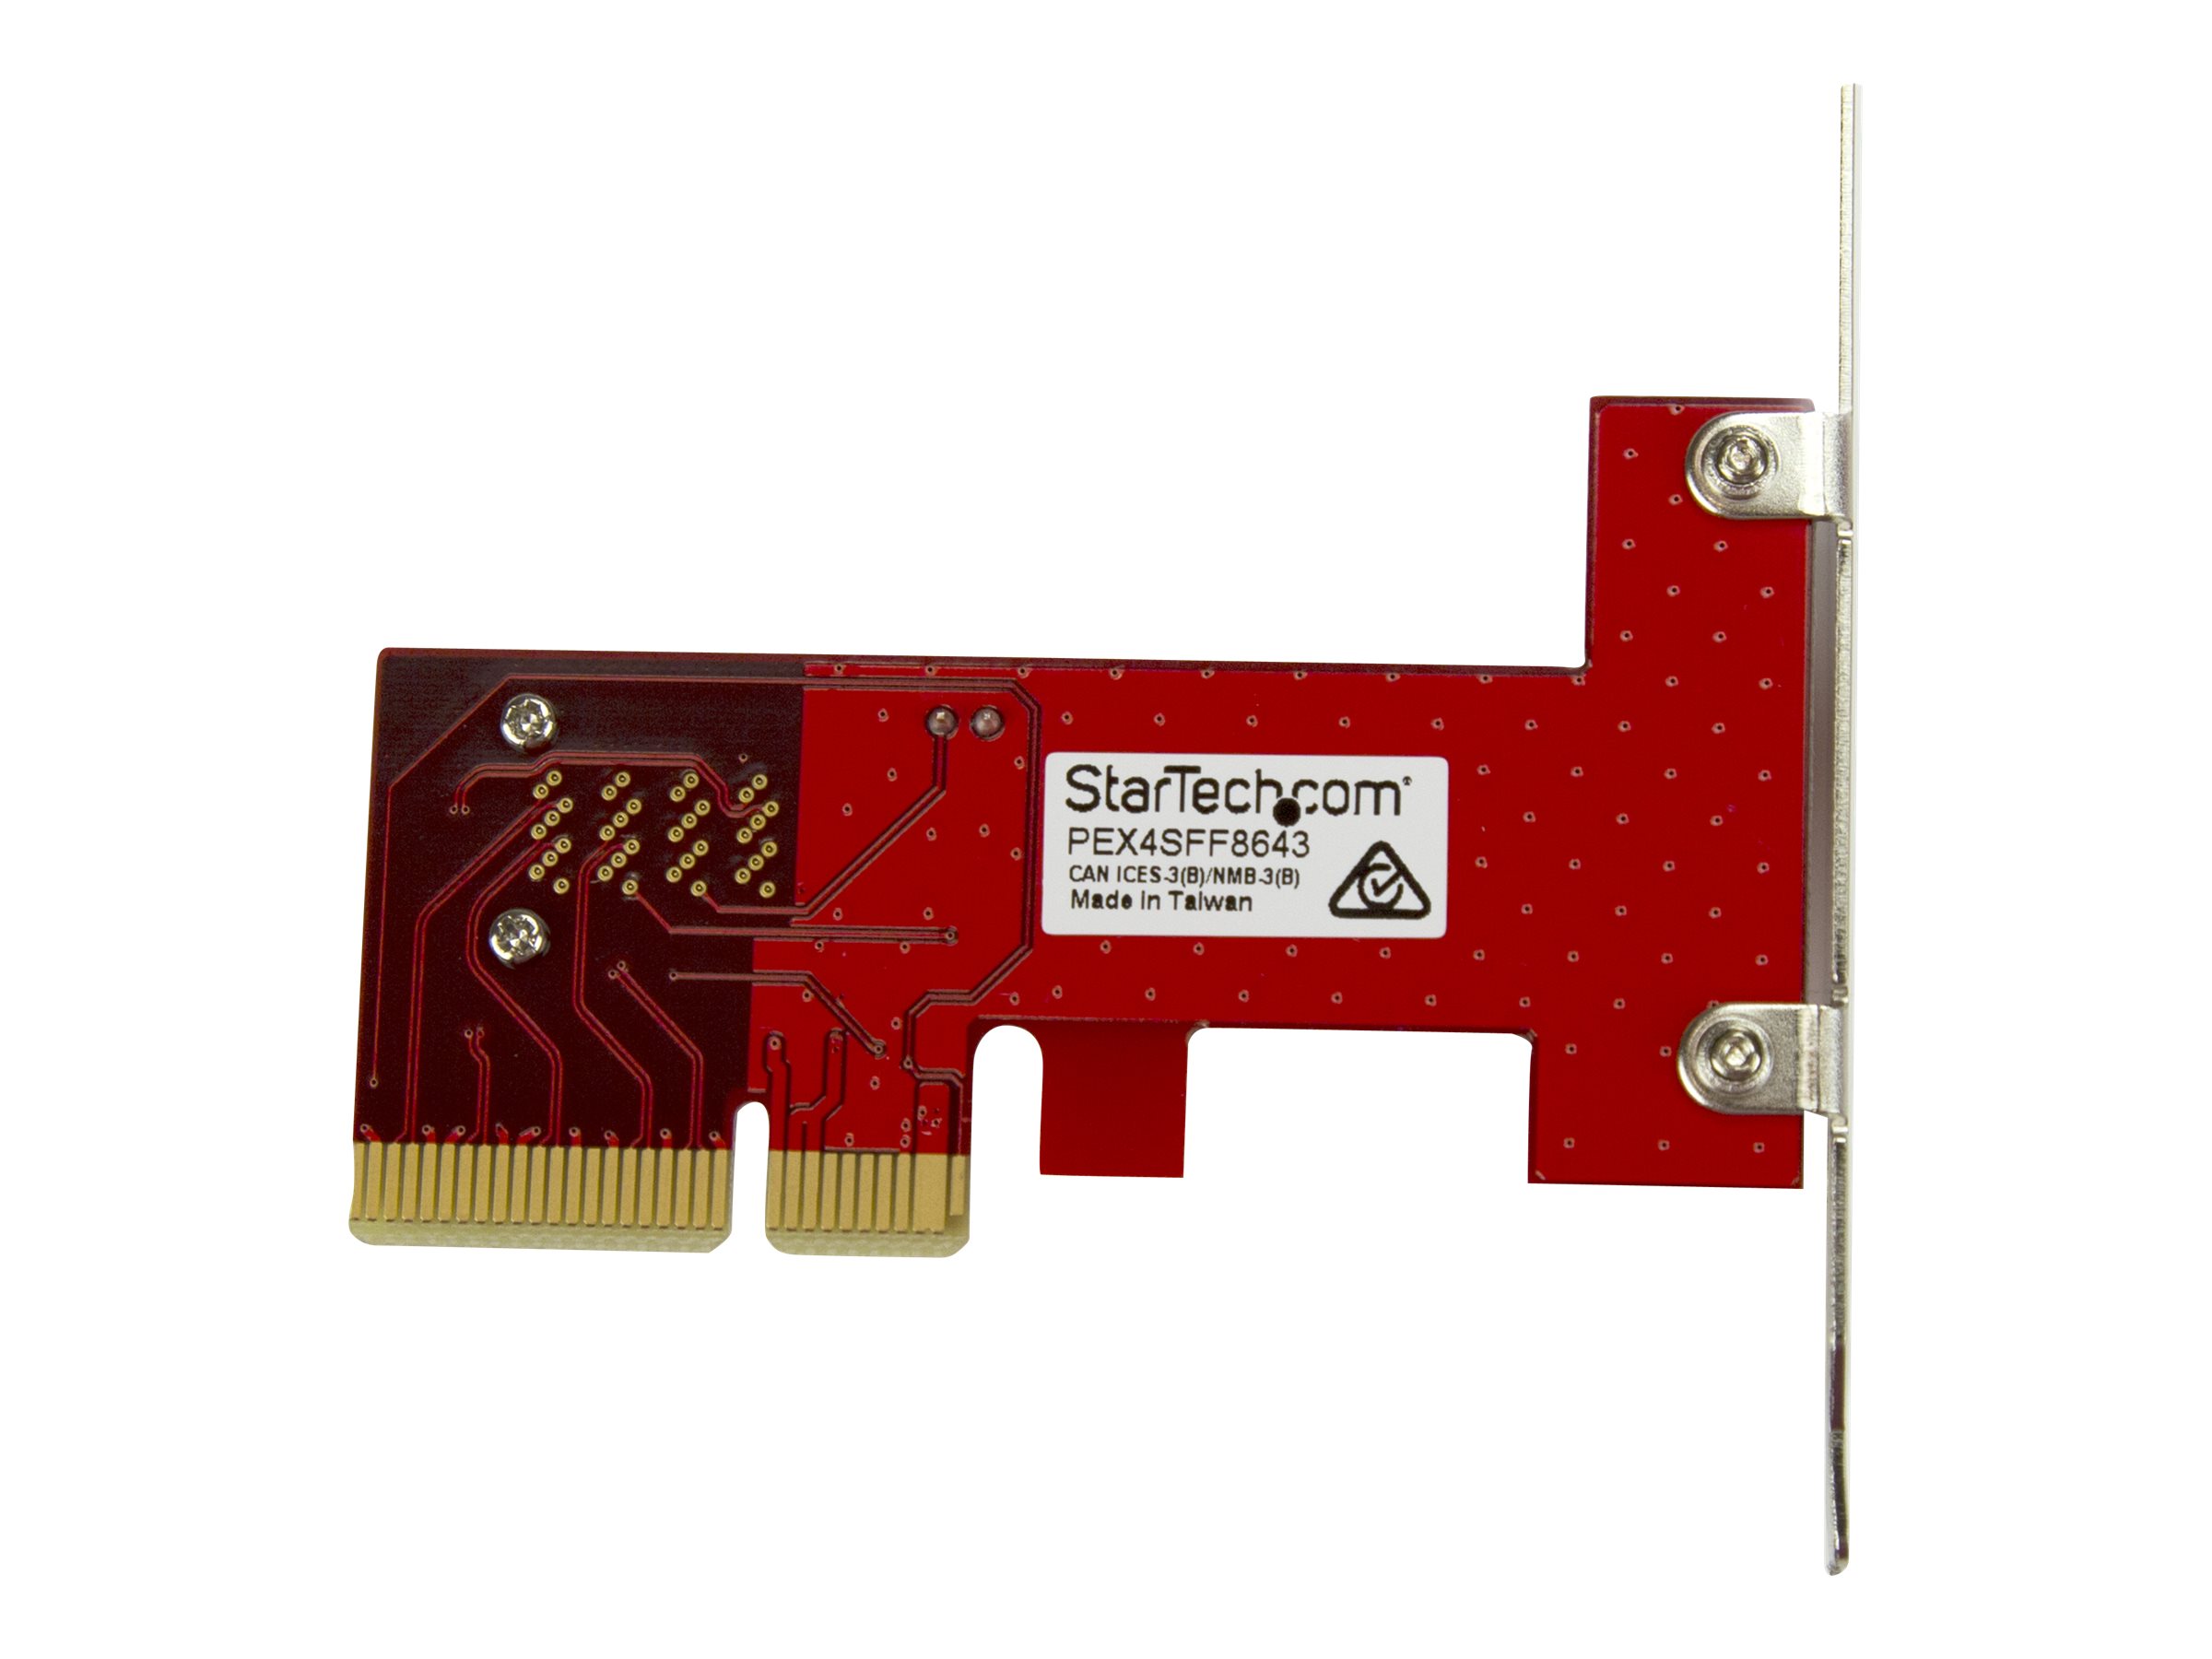 StarTech.com Adaptateur PCI Express x4 vers SFF-8643 pour SSD U.2 PCIe NVMe - Carte d'extension pour SSD U.2 NVMe via slot PCI Express - Adaptateur d'interface - 2.5" - Expansion Slot to U.2 - SAS 12Gb/s - PCIe x4 - rouge - PEX4SFF8643 - Adaptateurs de stockage